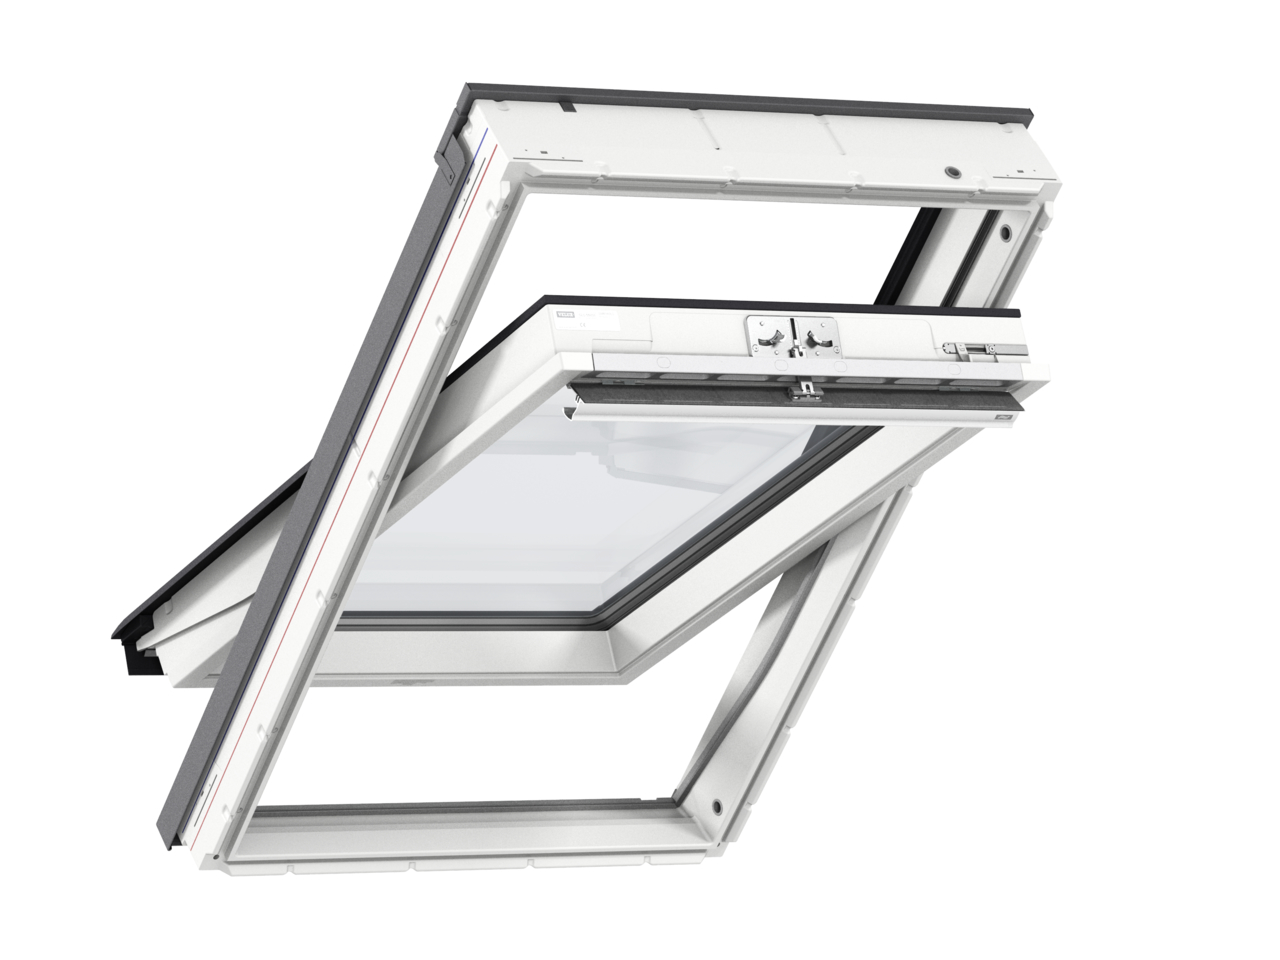 Мансардное двухкамерное белое окно Velux (Велюкс) GLU MK06 0061 78х118 см (ручка сверху), Деревянное мансардное окно в полиуретане с двухкамерным стеклопакетом GLU 0061 MK06 Окно 78*118 см, Velux